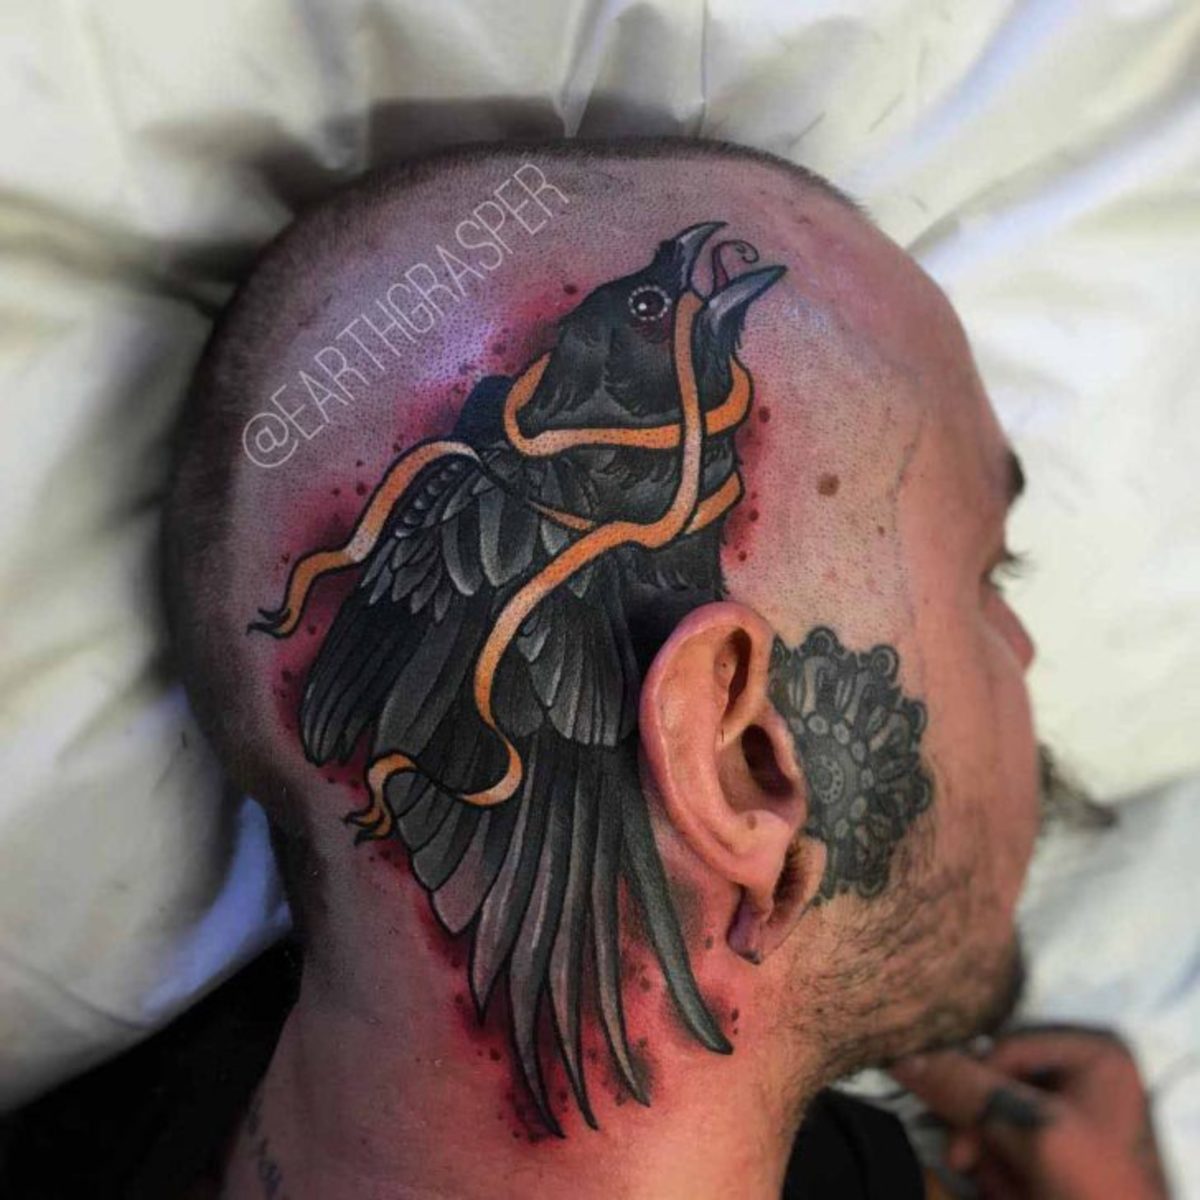 tatuointi, tatuoija, tatuointiidea, tatuointiinspiraatio, tatuointisuunnittelu, pään tatuointi, muste, inkedmag